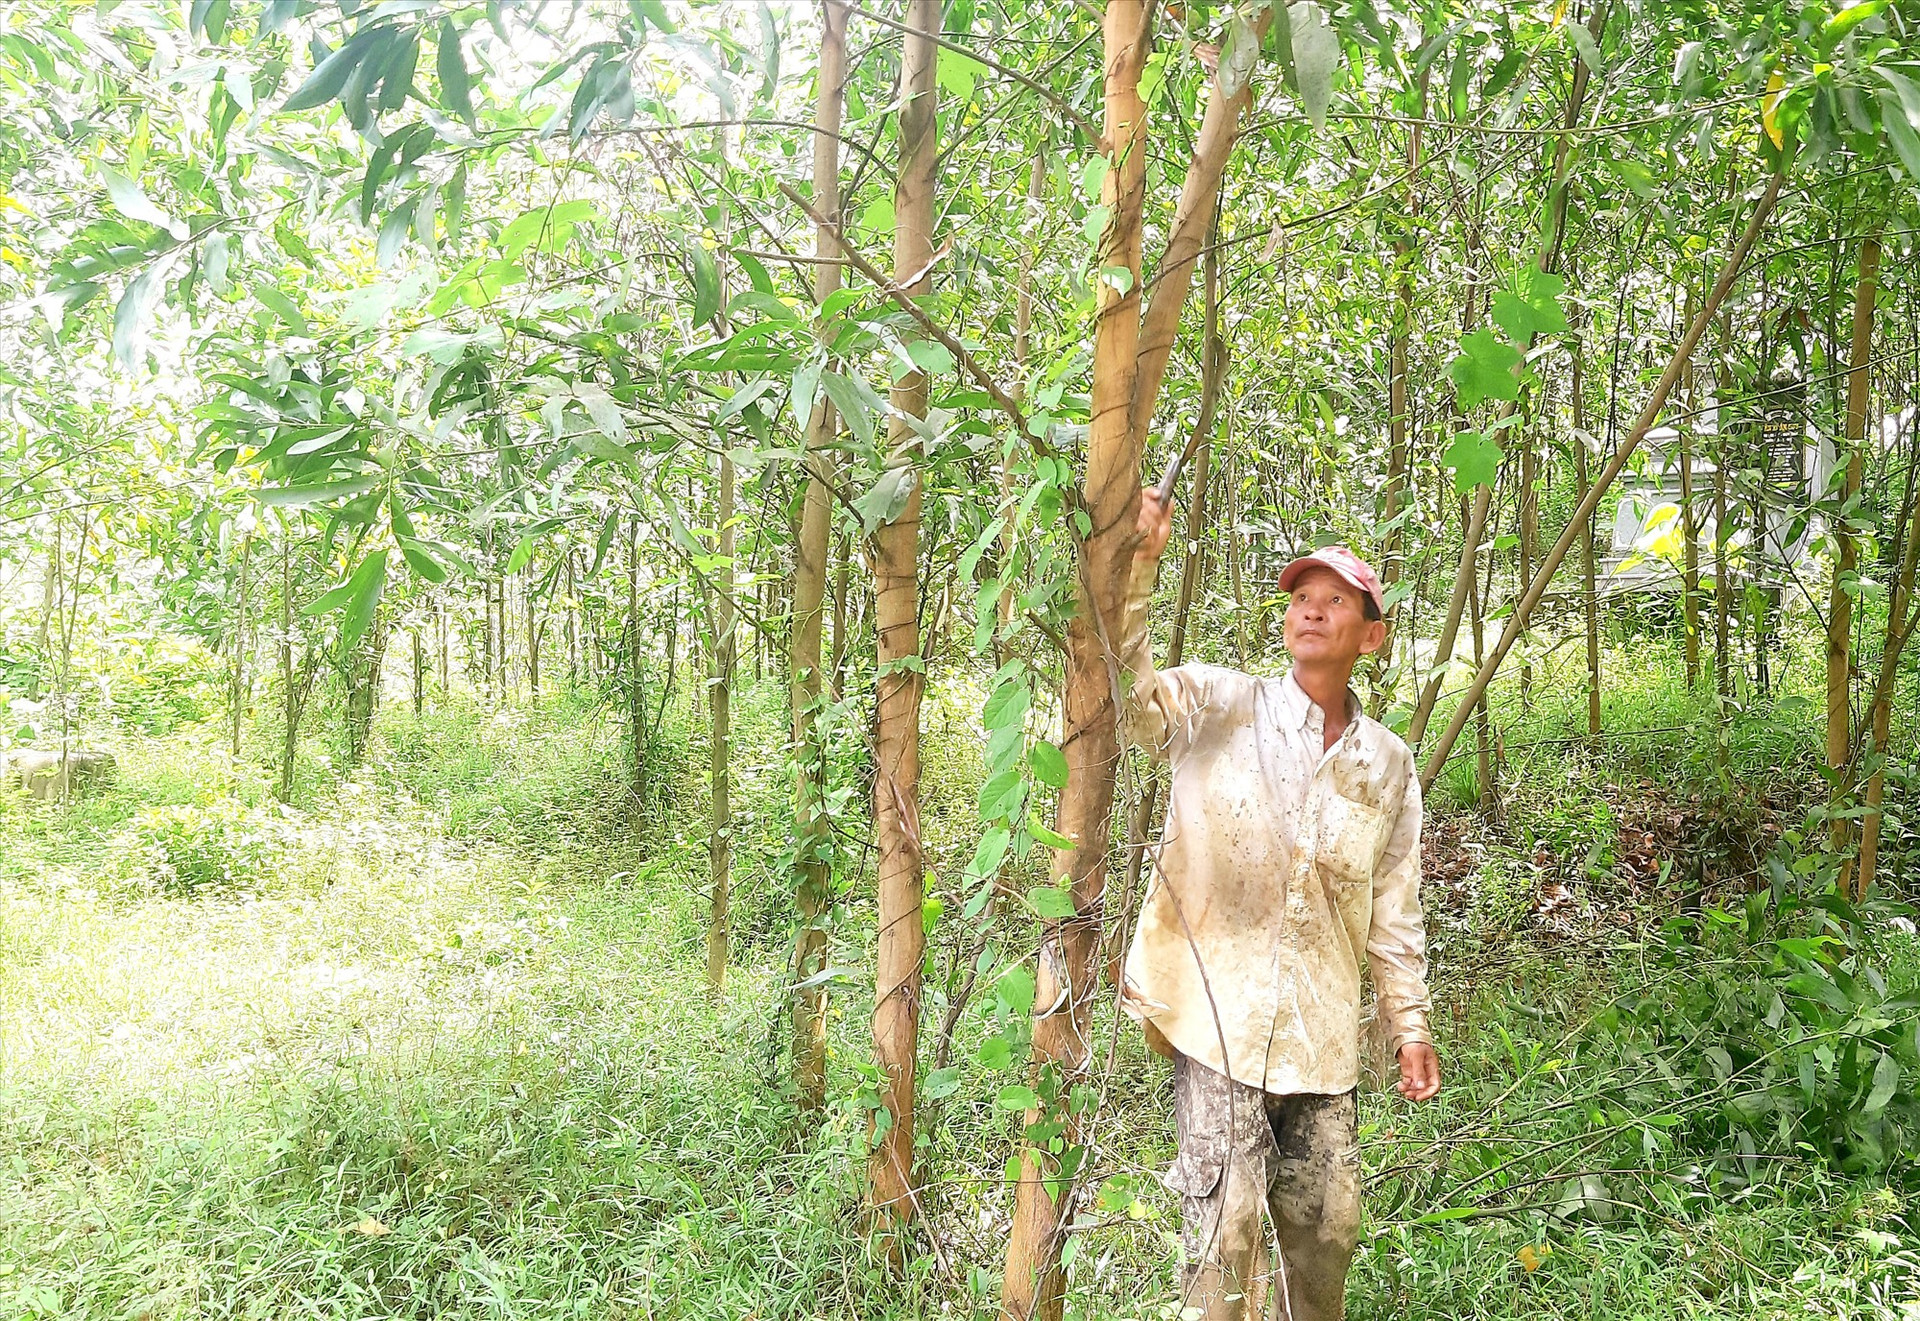 Mô hình trồng rừng nguyên liệu theo phương thức hàng hóa giúp nhiều hộ dân ở xã Phước Ninh có nguồn thu nhập khá. Ảnh: S.A